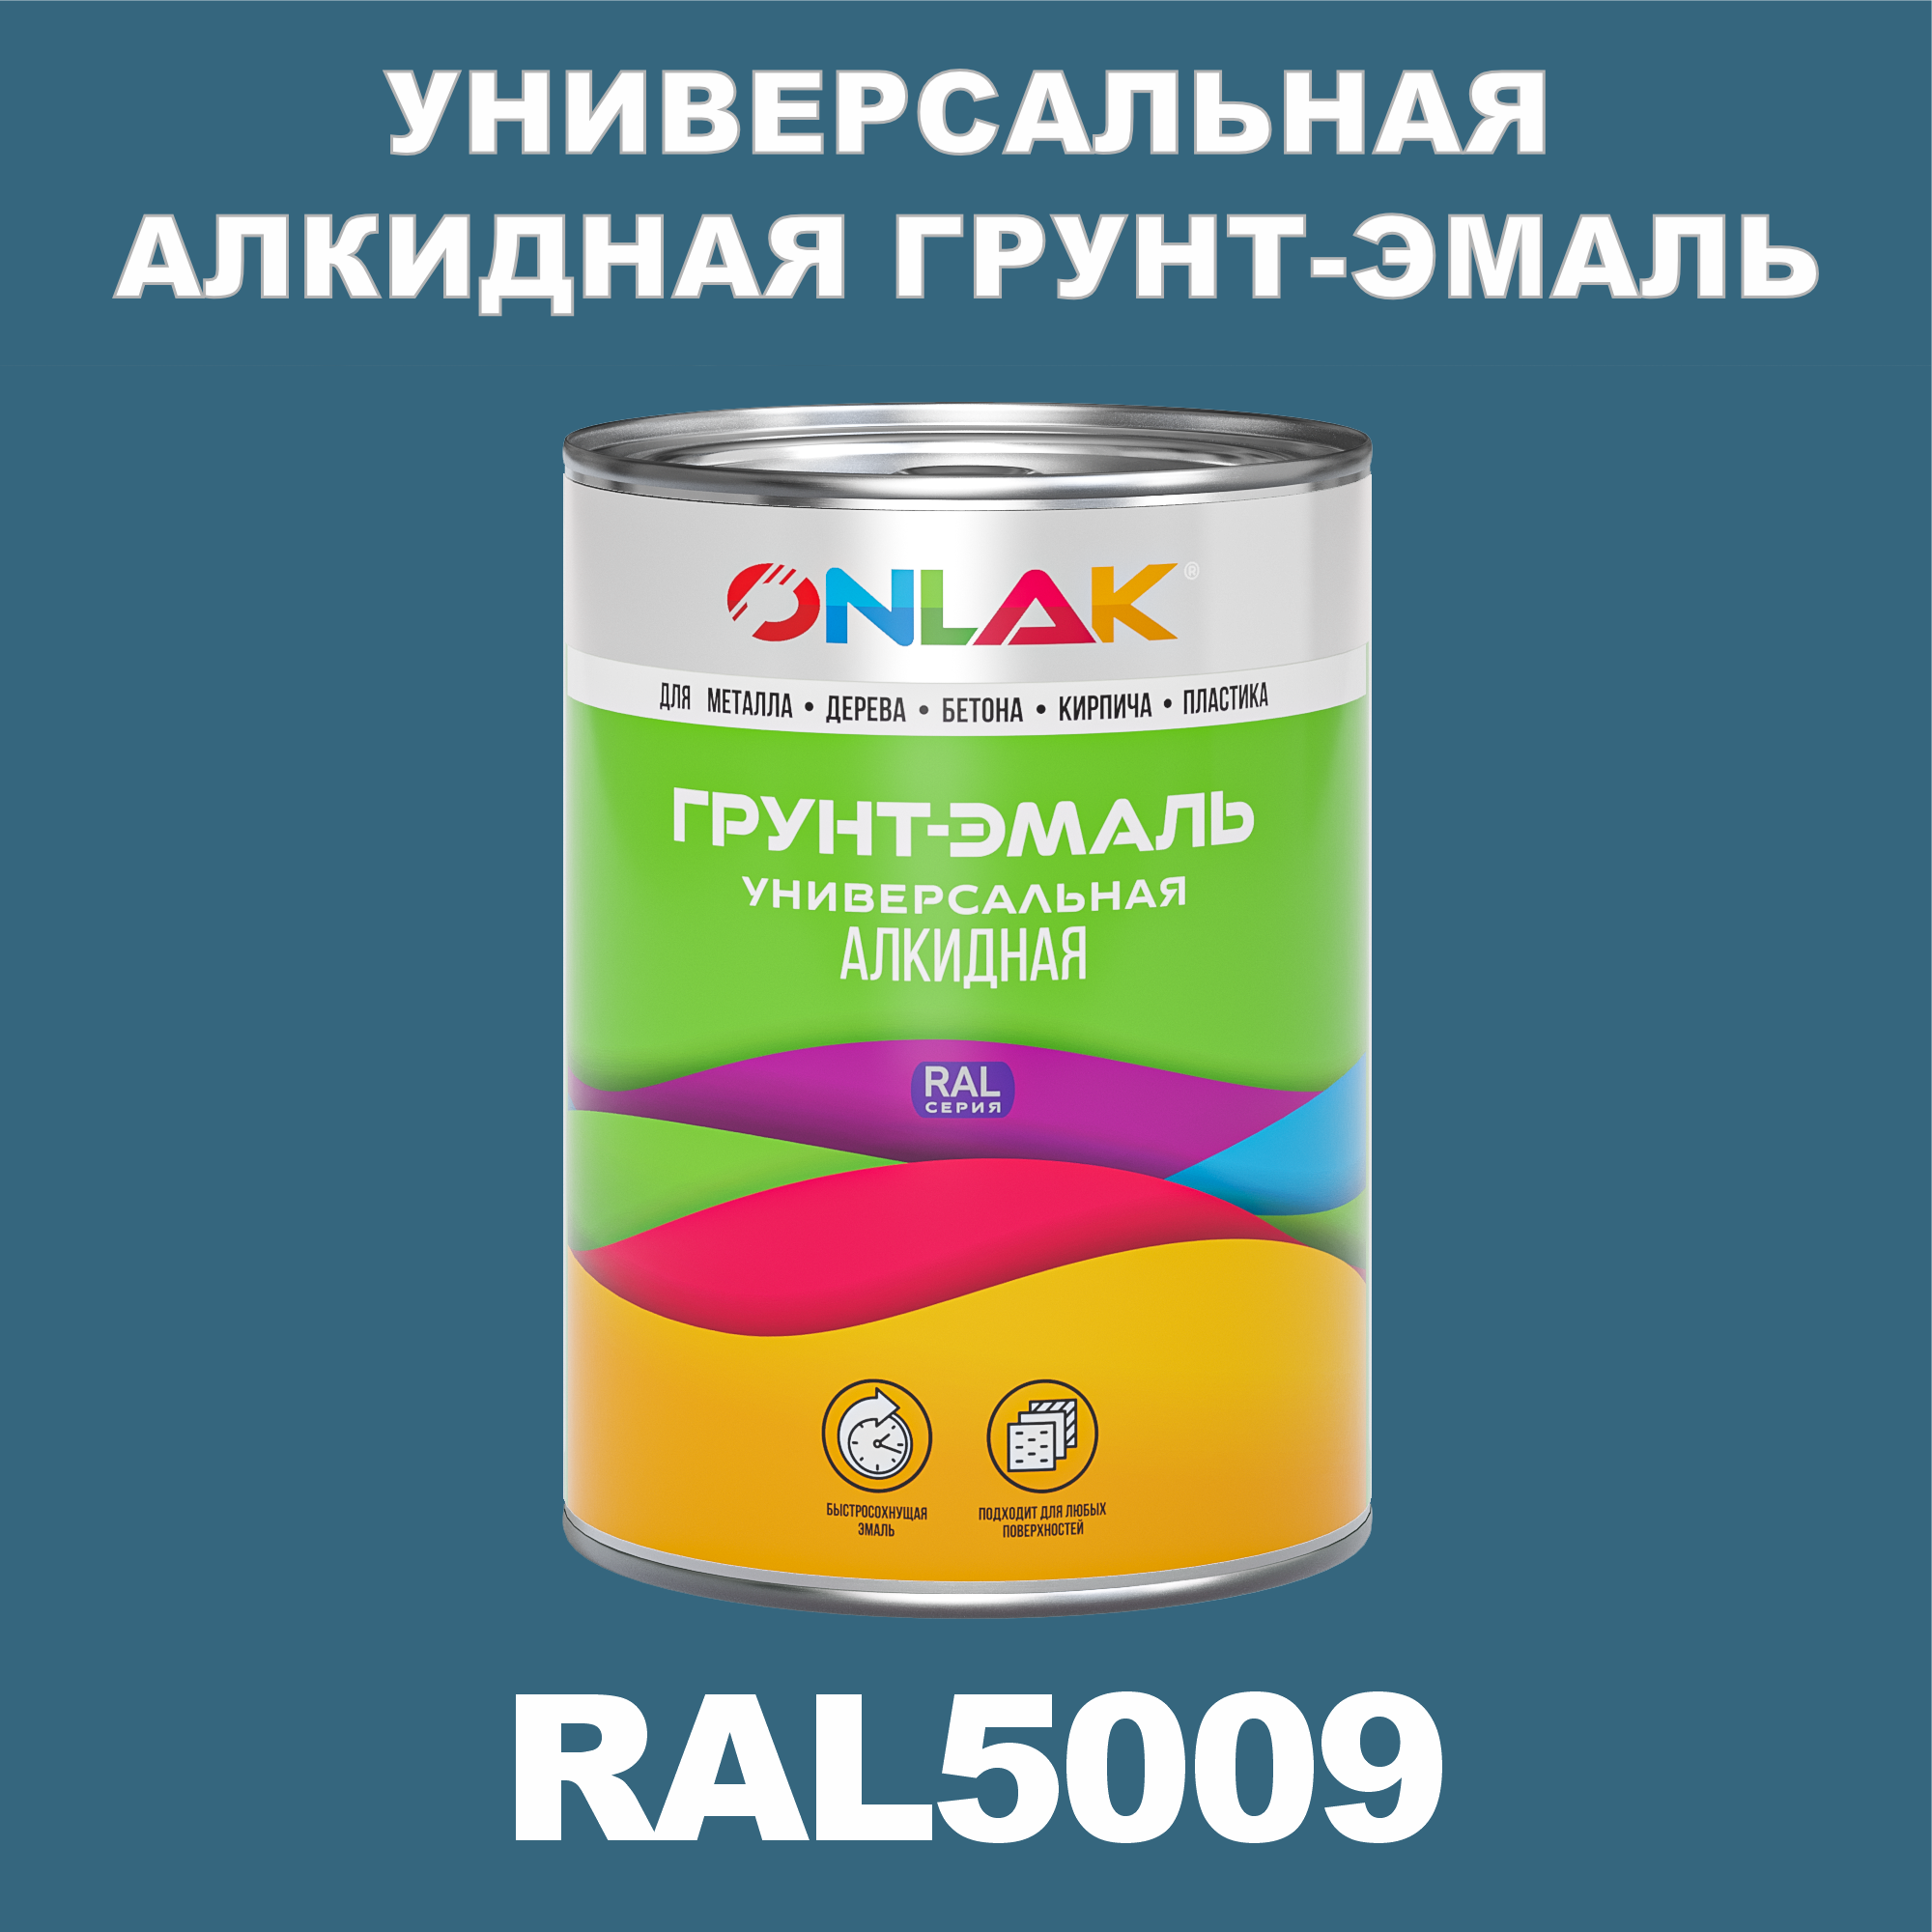 Грунт-эмаль ONLAK 1К RAL5009 антикоррозионная алкидная по металлу по ржавчине 1 кг грунт эмаль yollo по ржавчине алкидная серая 0 9 кг